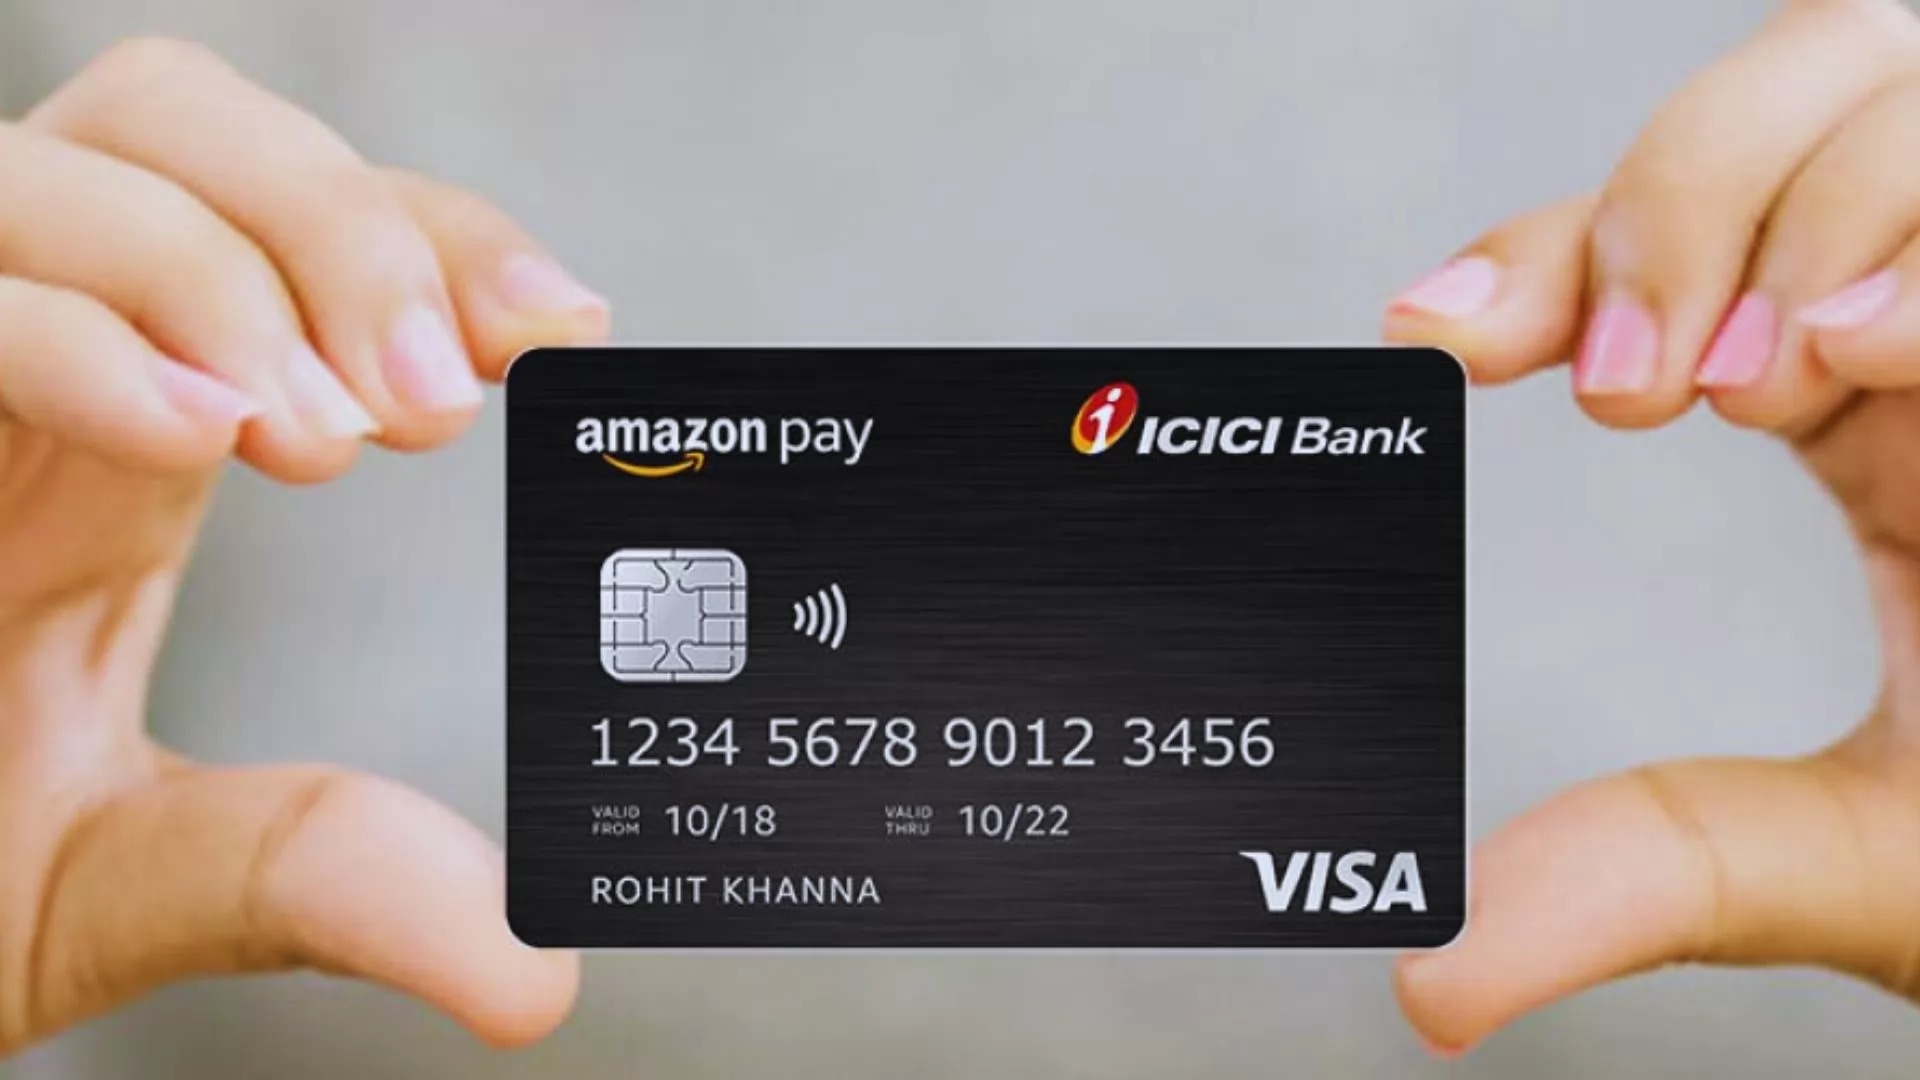  Amazon Pay ICICI Bank